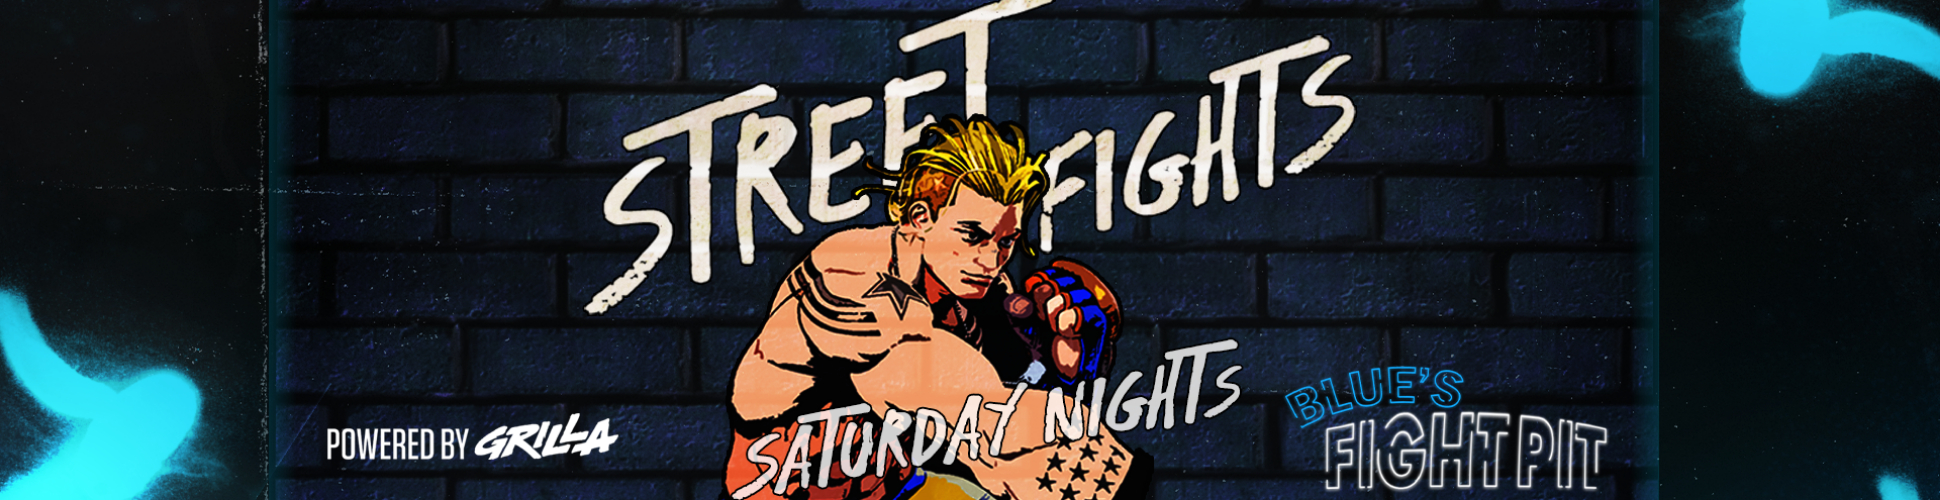 Blue's Fight Pit - Street Fights R4 Saturday Nights #16